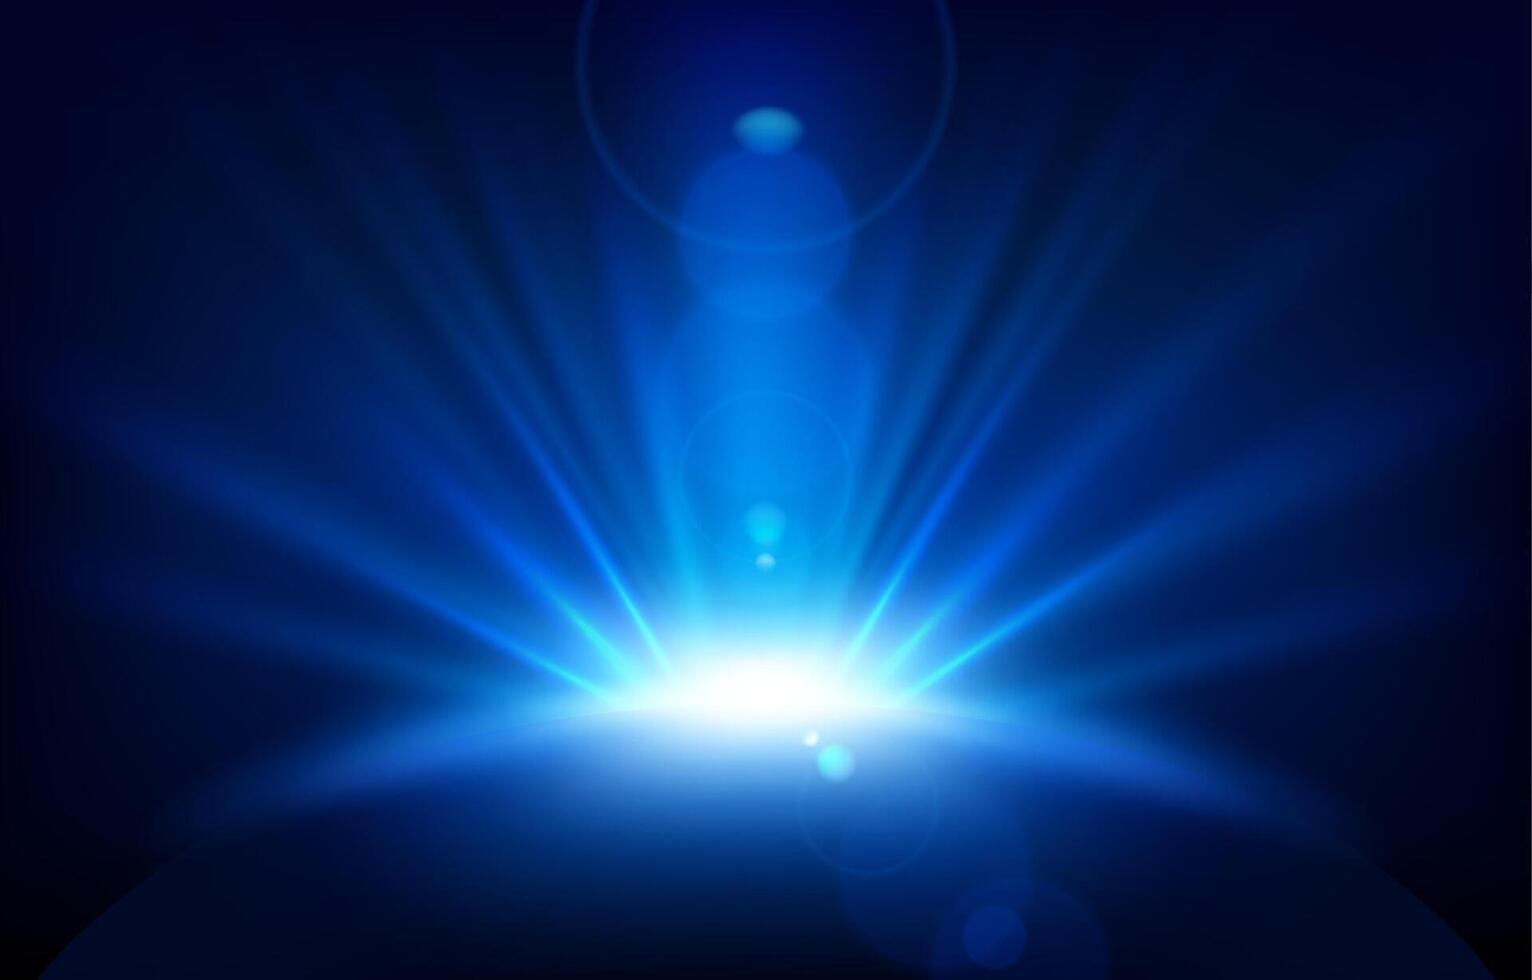 raggi blu con riflesso lente, illustrazione vettoriale